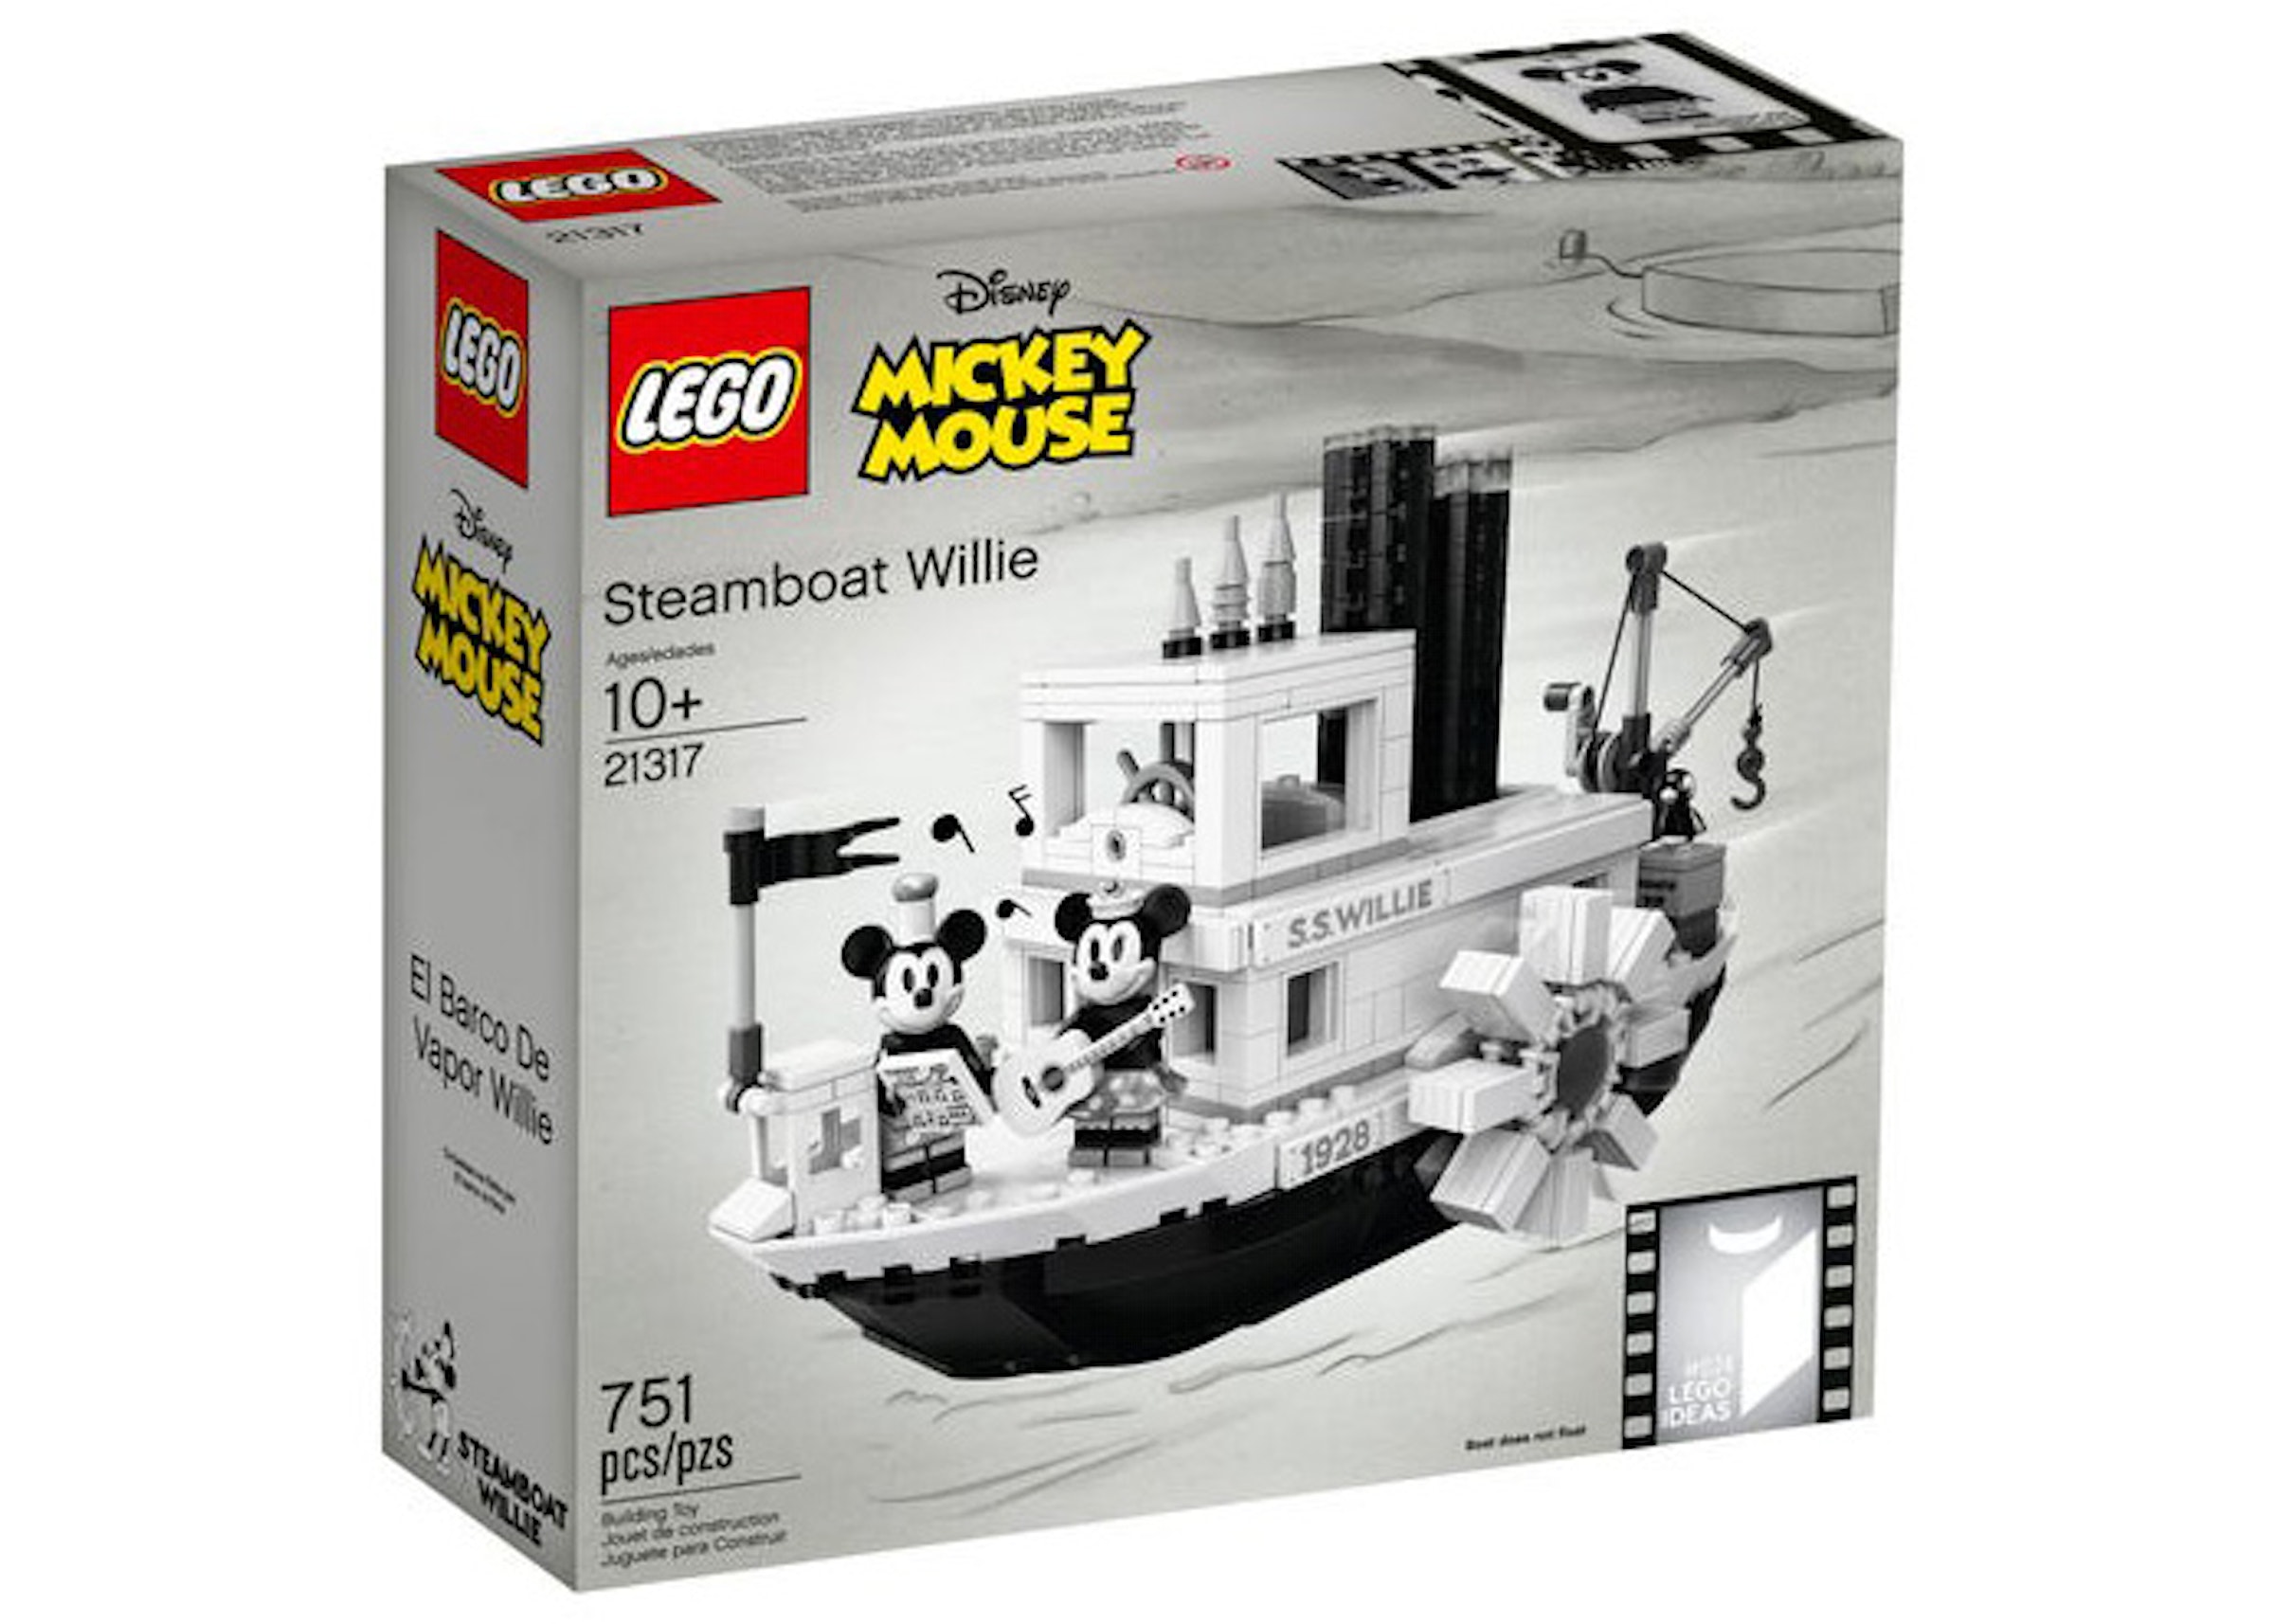 Afsnit prangende Delvis LEGO Ideas Steamboat Willie Set 21317 - US